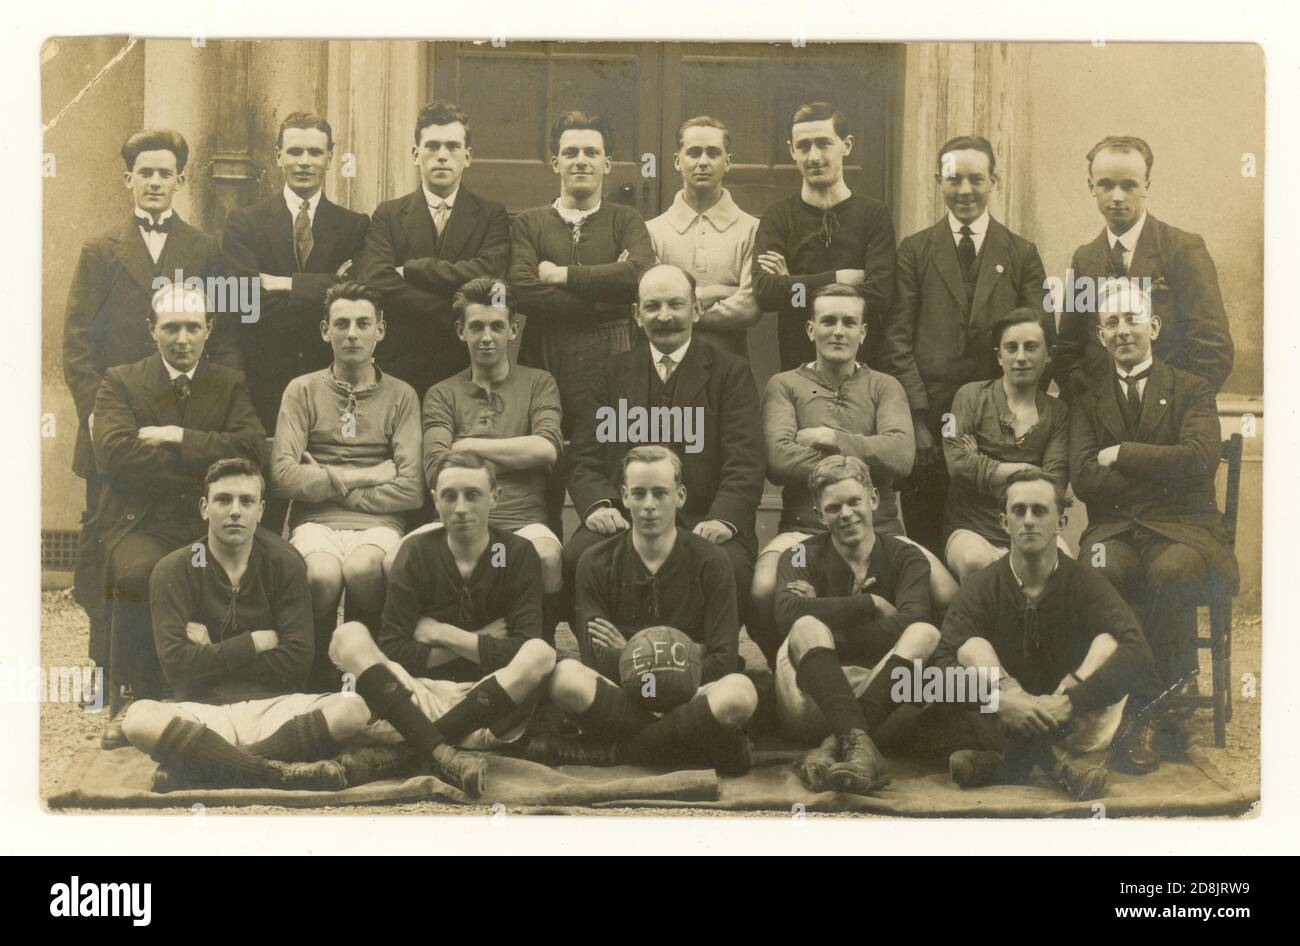 Original antique début 1900's pre WW1 club photographie carte postale de l'équipe de football - E.F.C. est écrit sur le football, mais pas connu si ce Everton football Club, vers 1912, 1913. Lieu inconnu, Royaume-Uni Banque D'Images